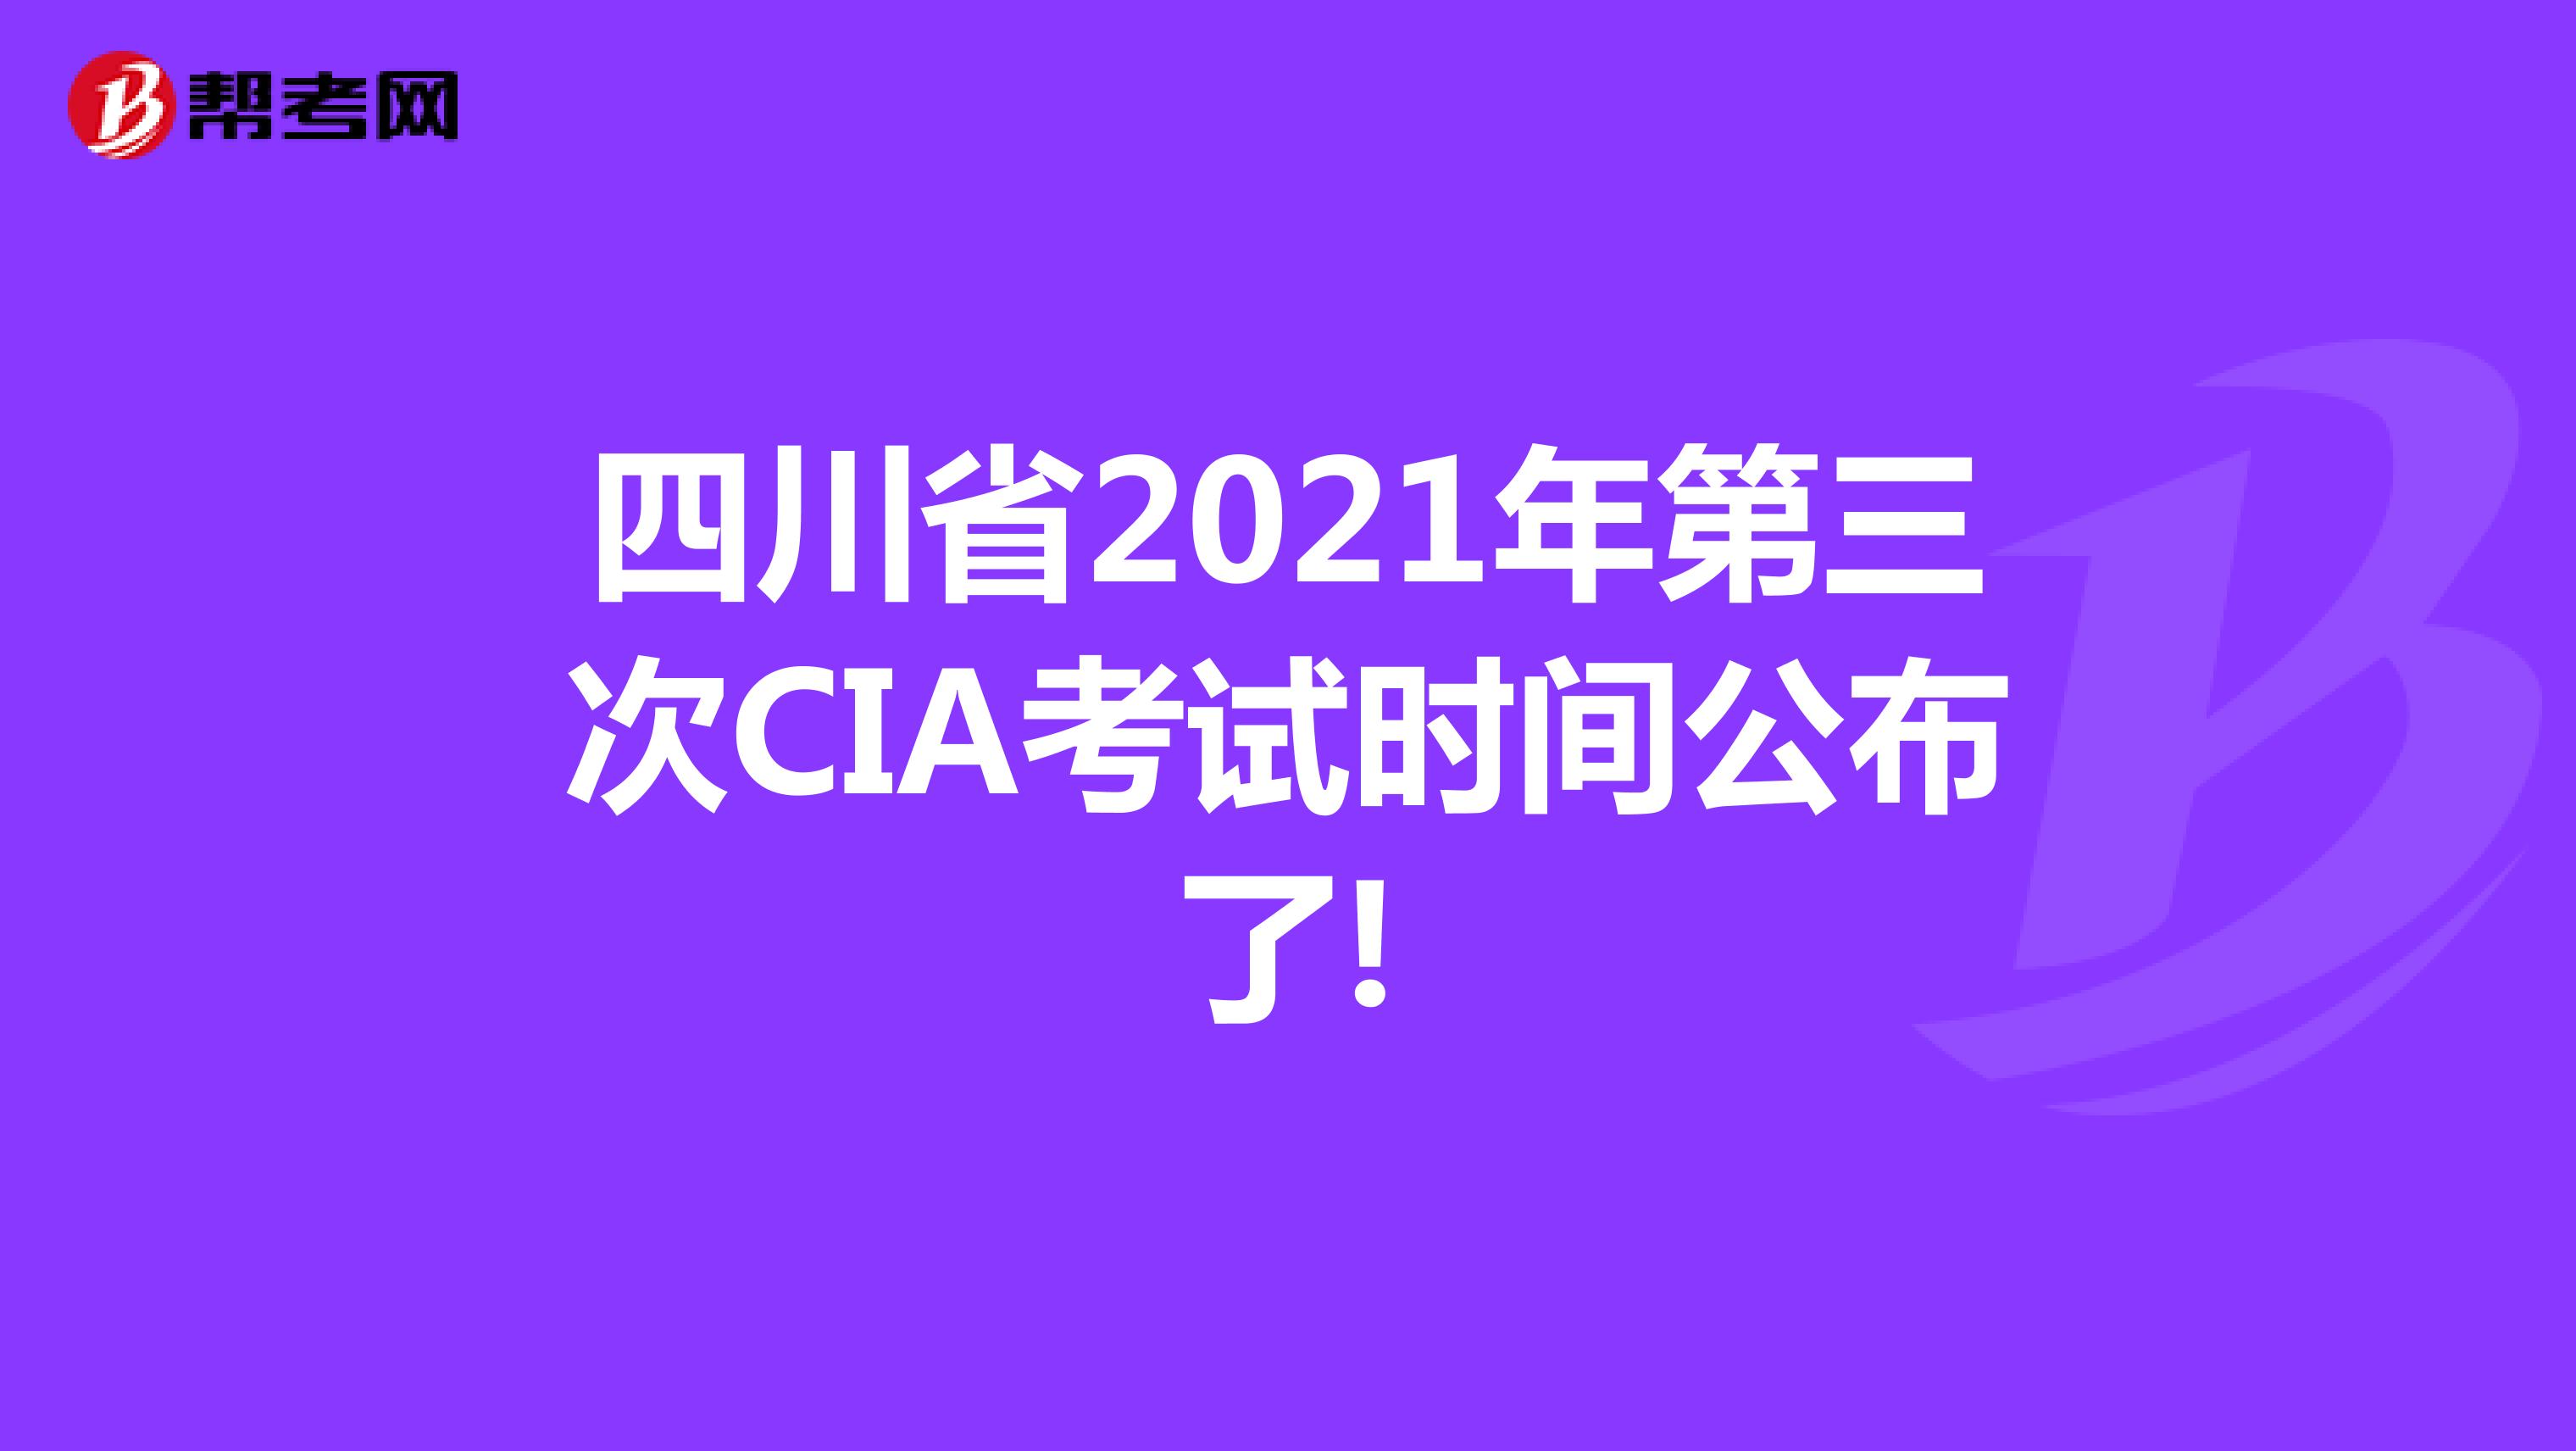 四川省2021年第三次CIA考试时间公布了!